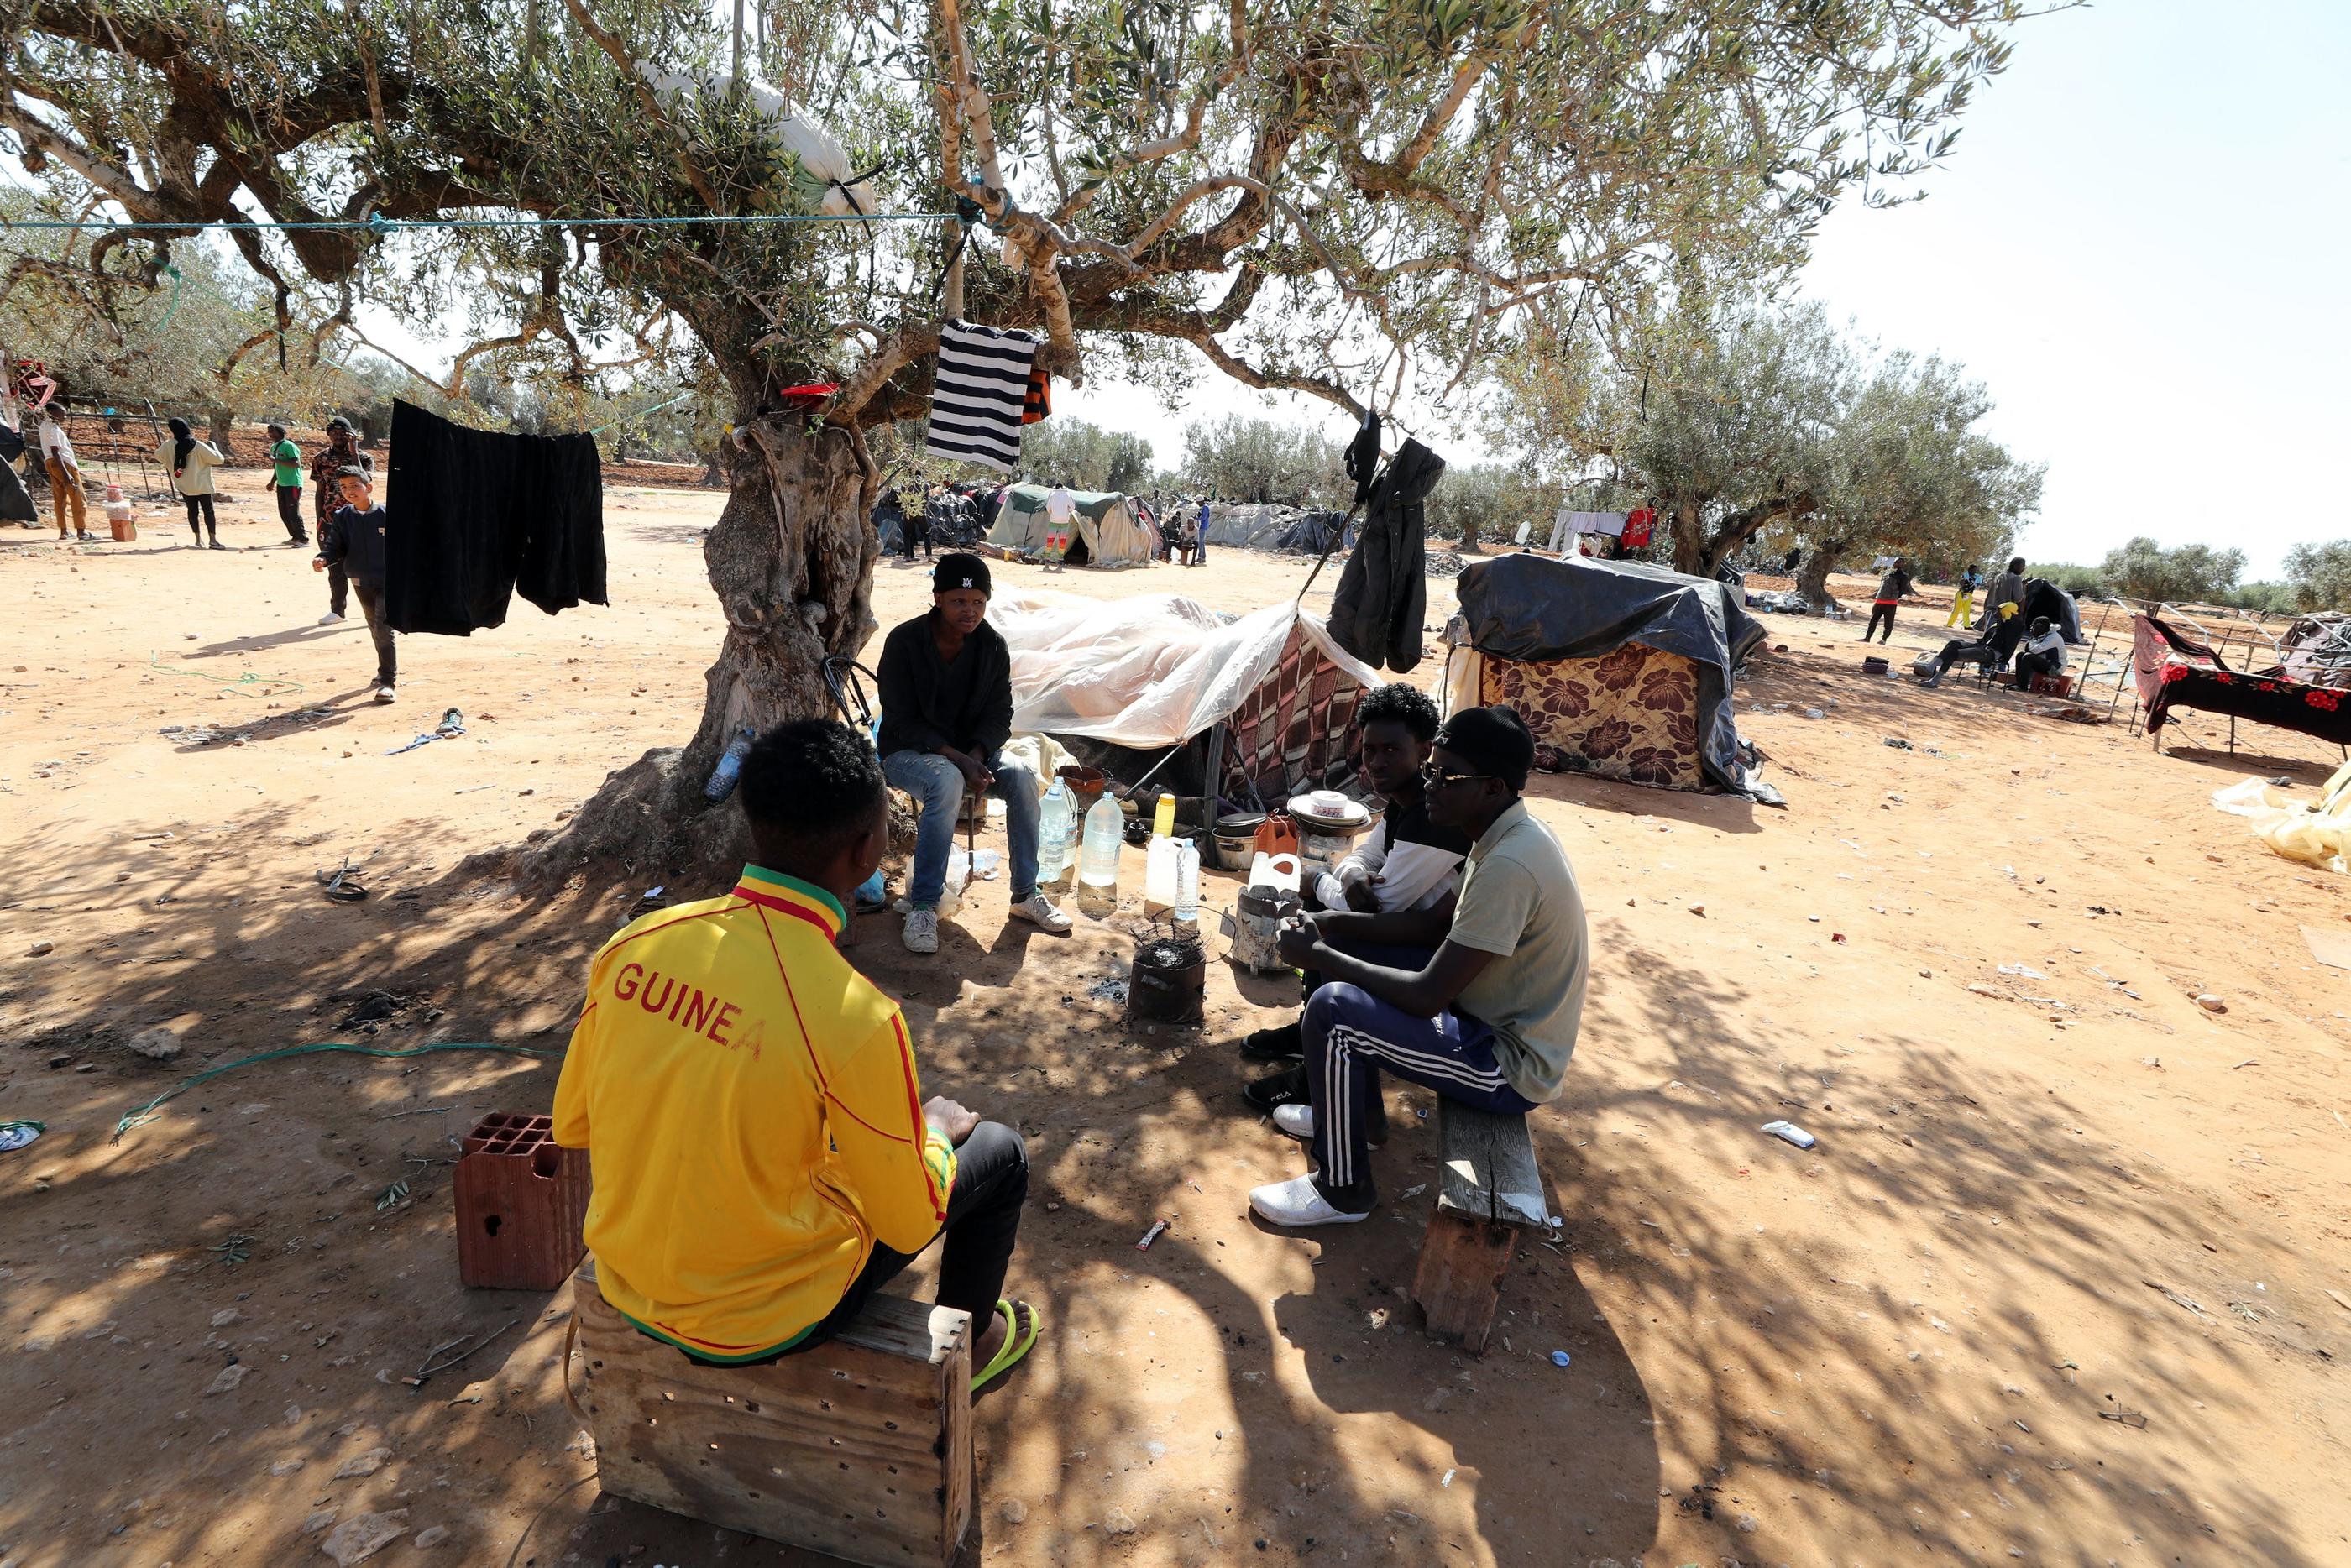 Les migrants clandesstins d'Afrique subsaharienne se retrouvent souvent au nord de l'Afrique (ici en Tunisie) dans l'attente d'une traversée vers l'Europe. EPA/MaxPPP/Mohamed Messara